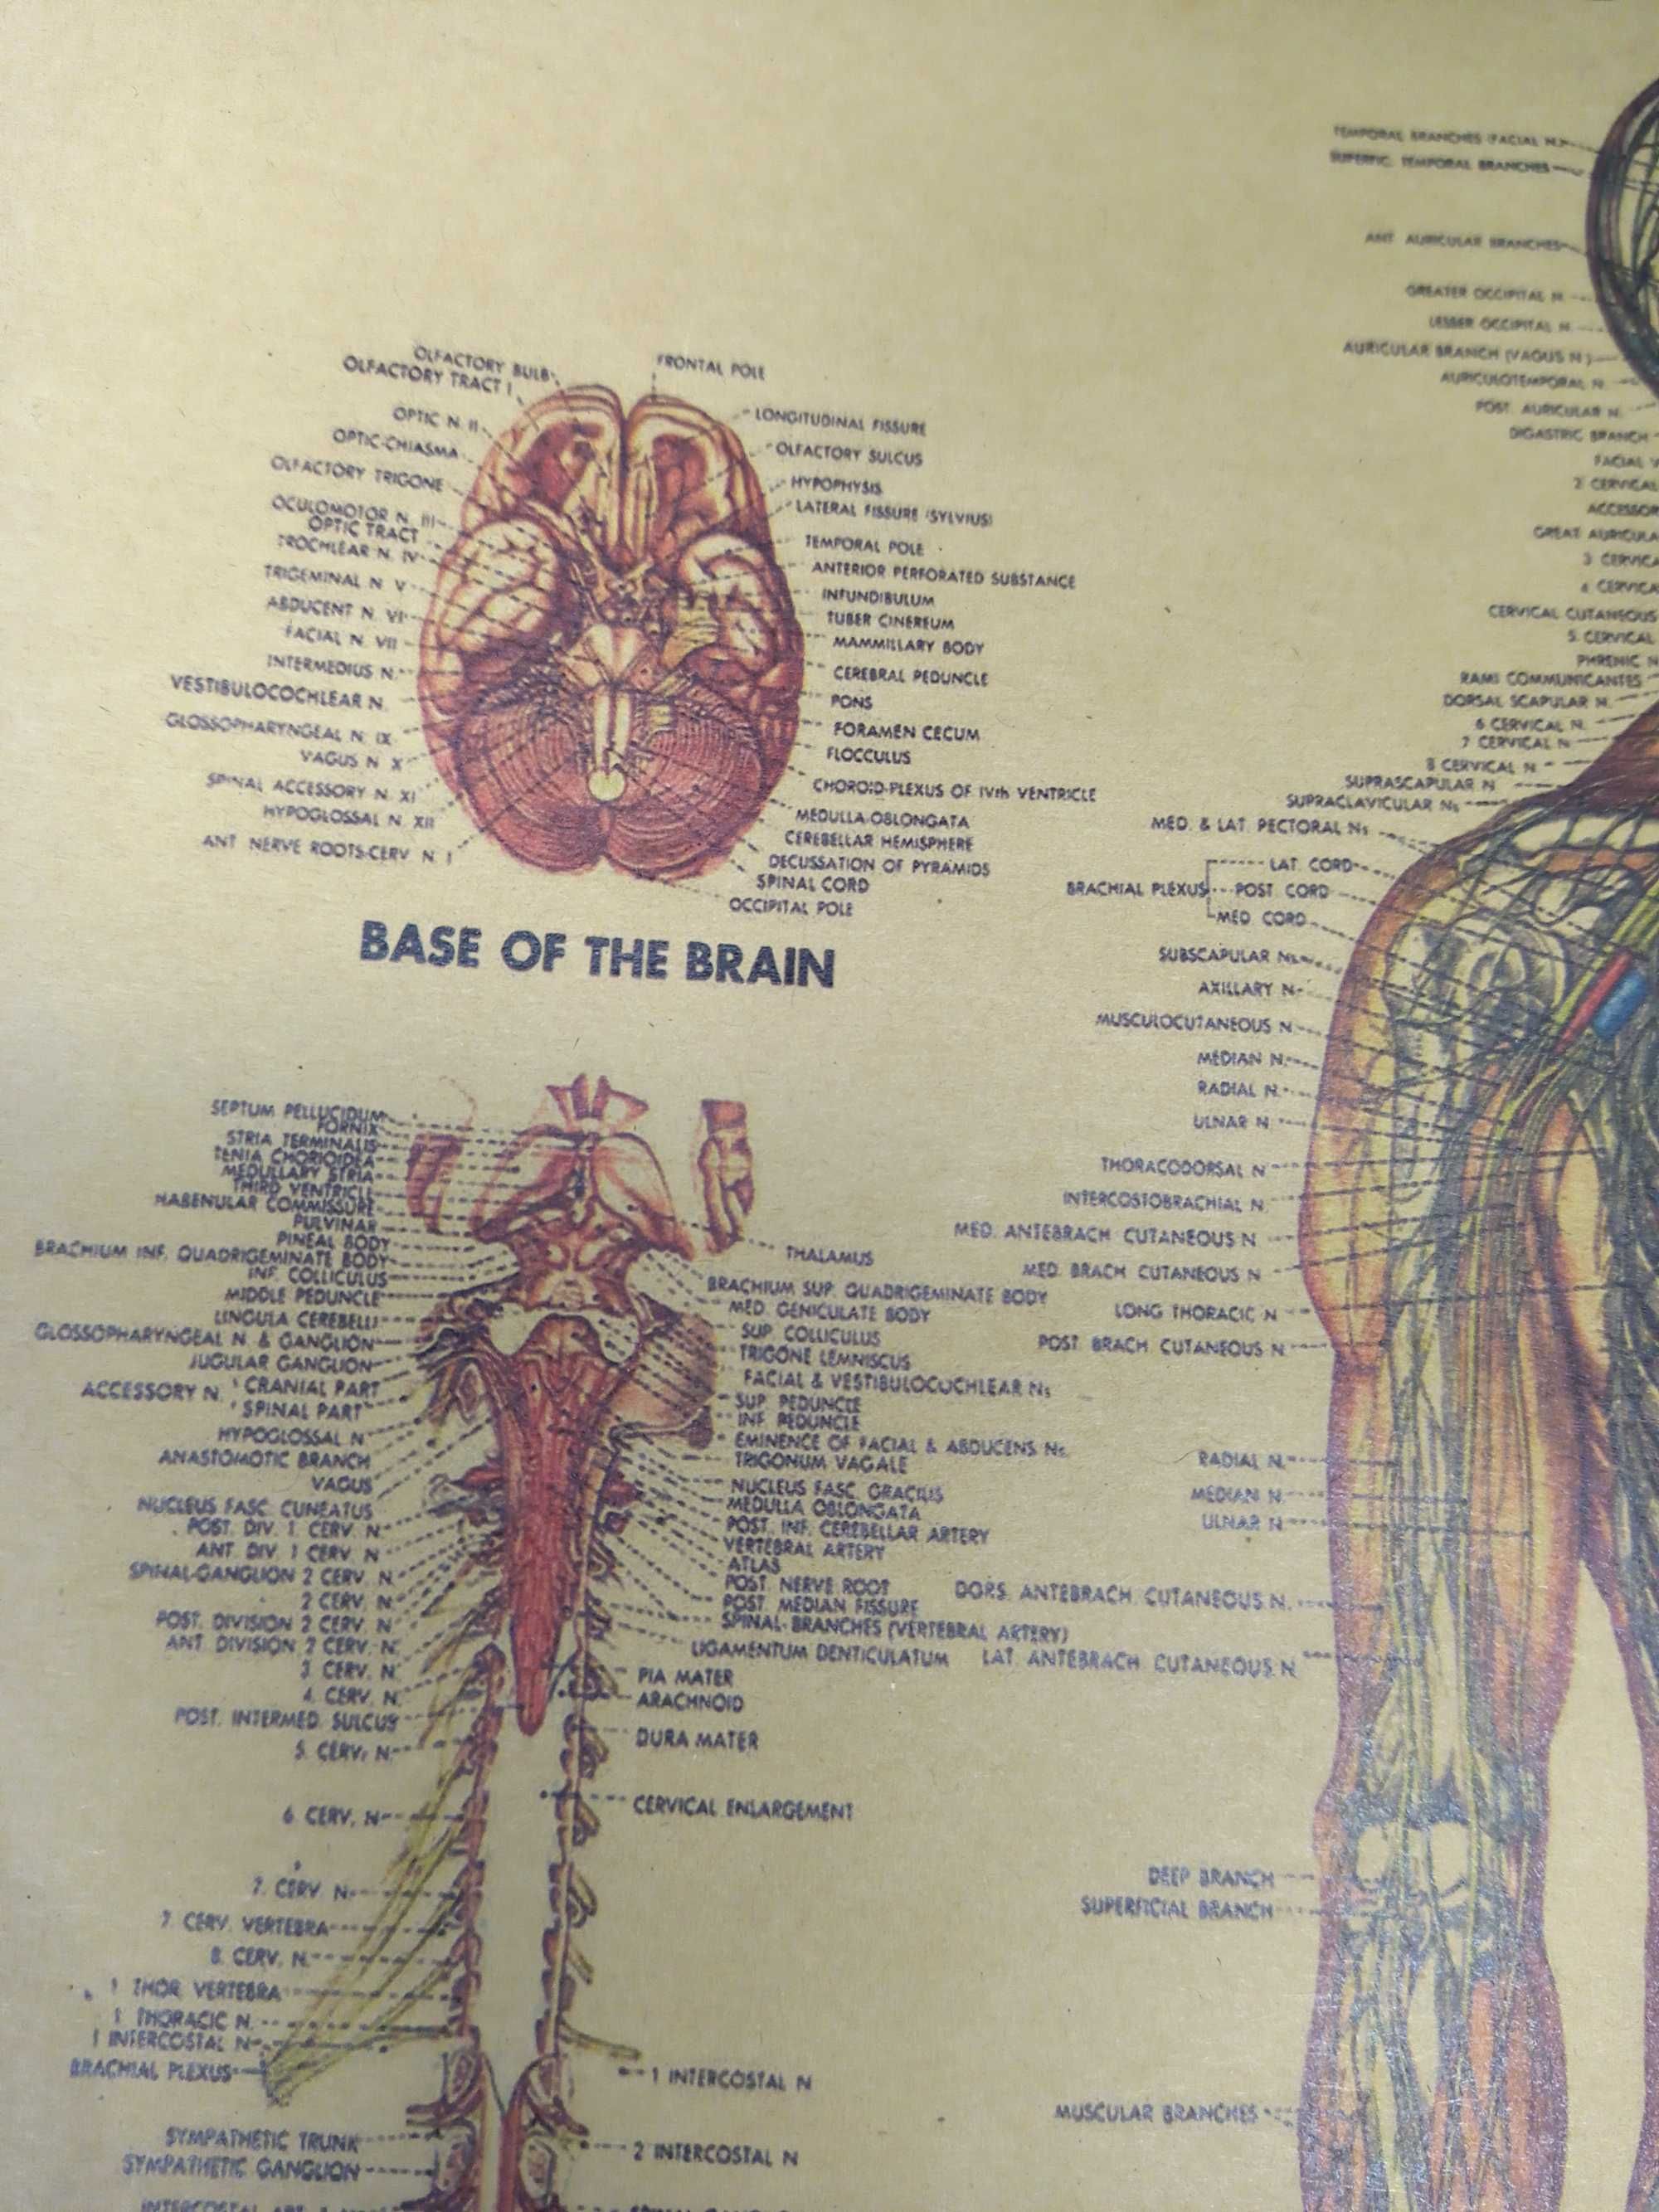 Plakat Retro Vintage Ludzkie Ciało Mięśnie Szkielet Edukacja 42x30 cm